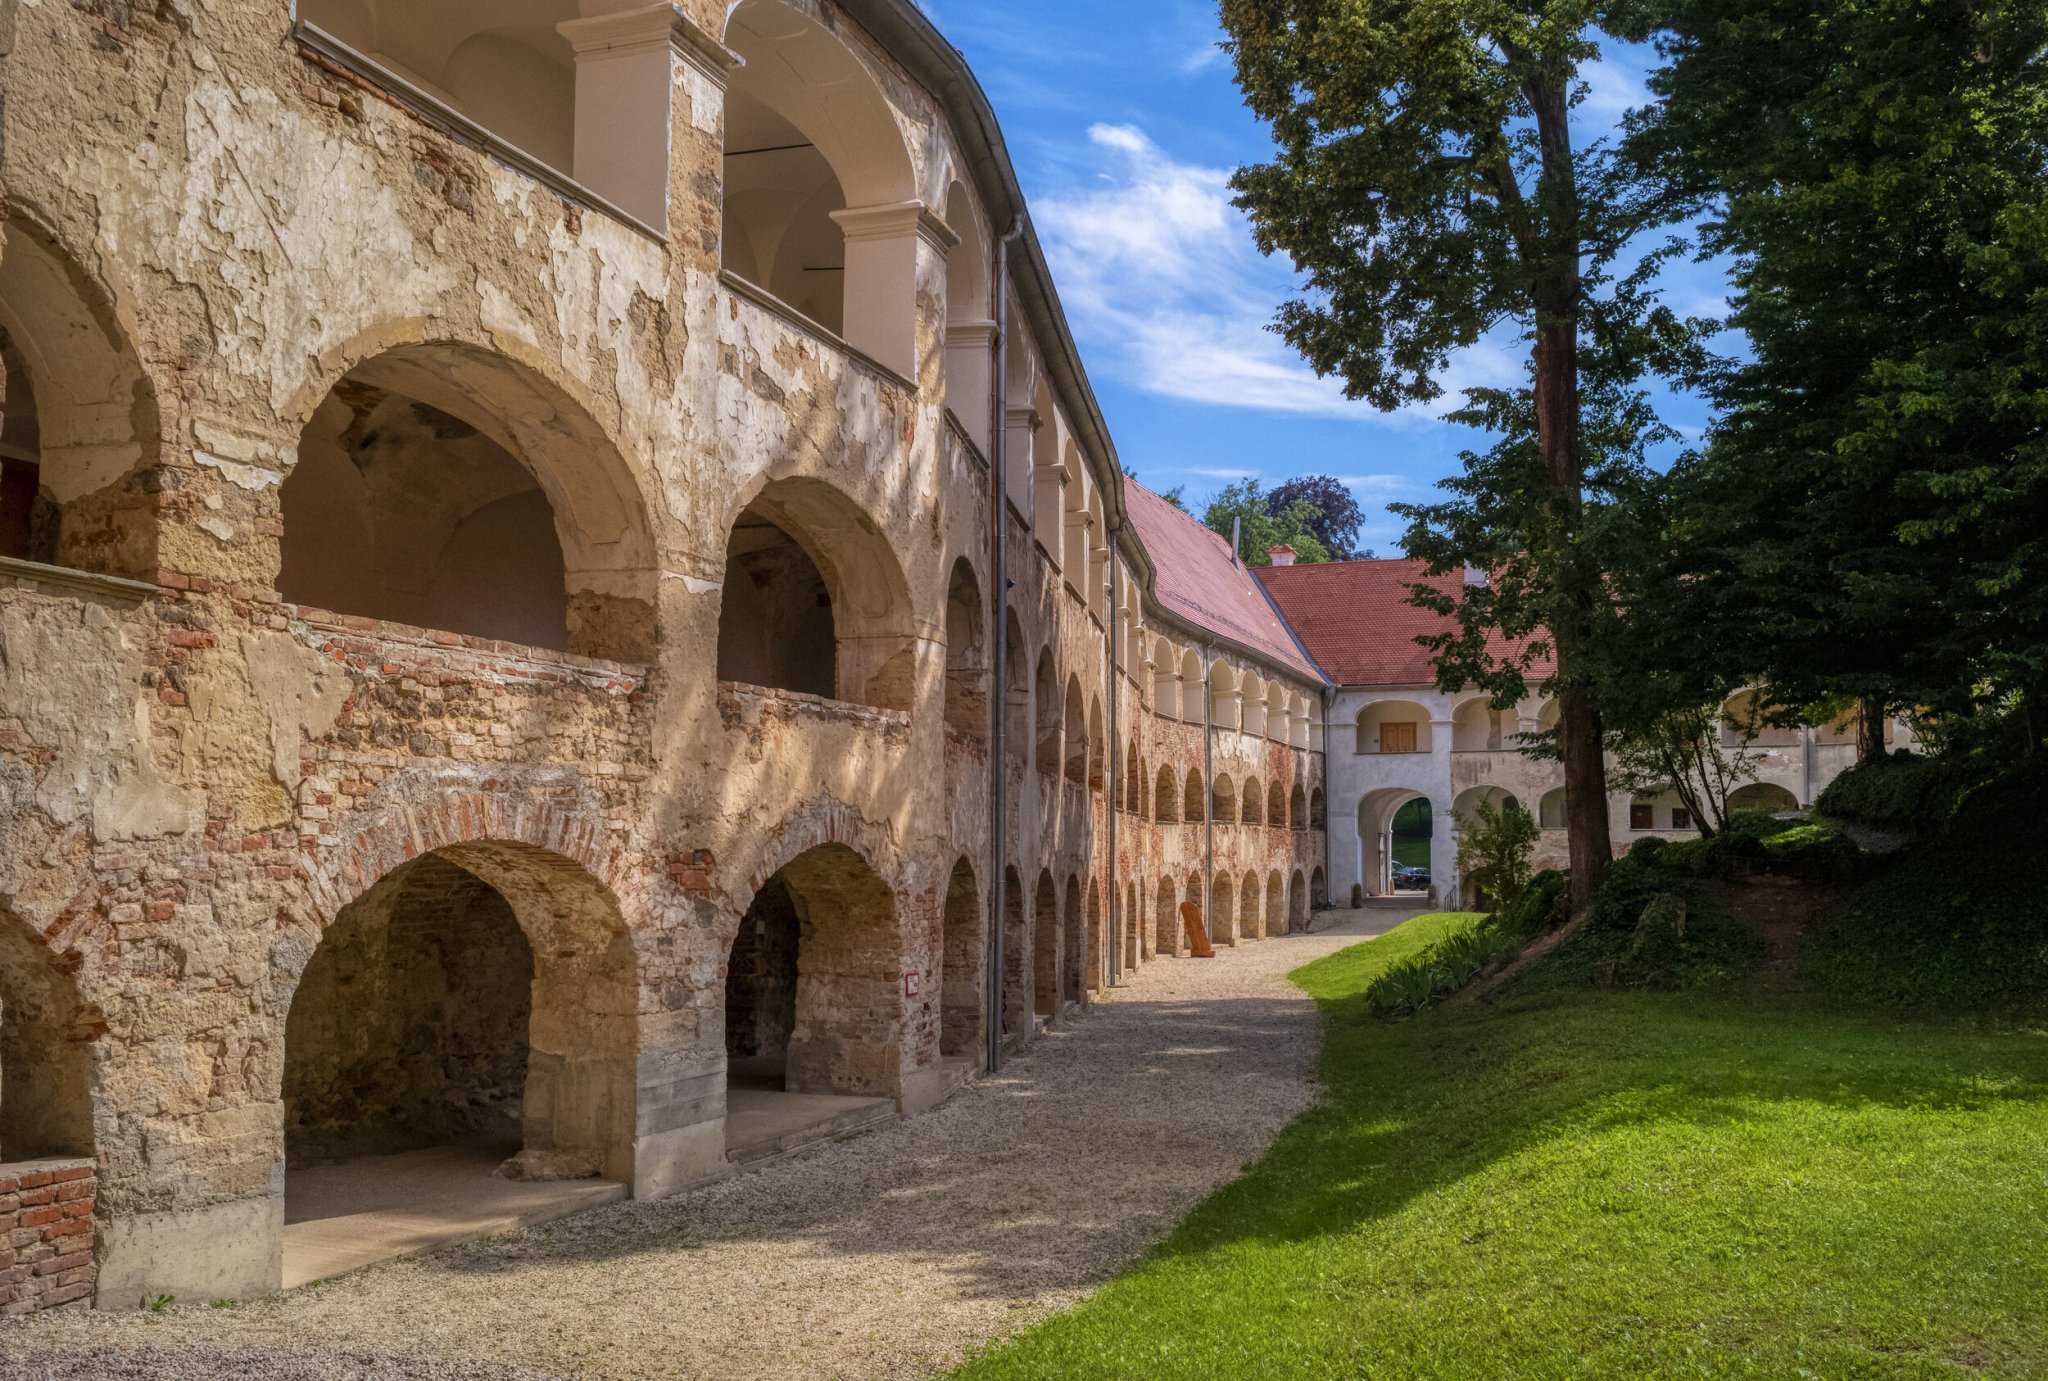 Castle Grad in Prekmurje - Slovenia